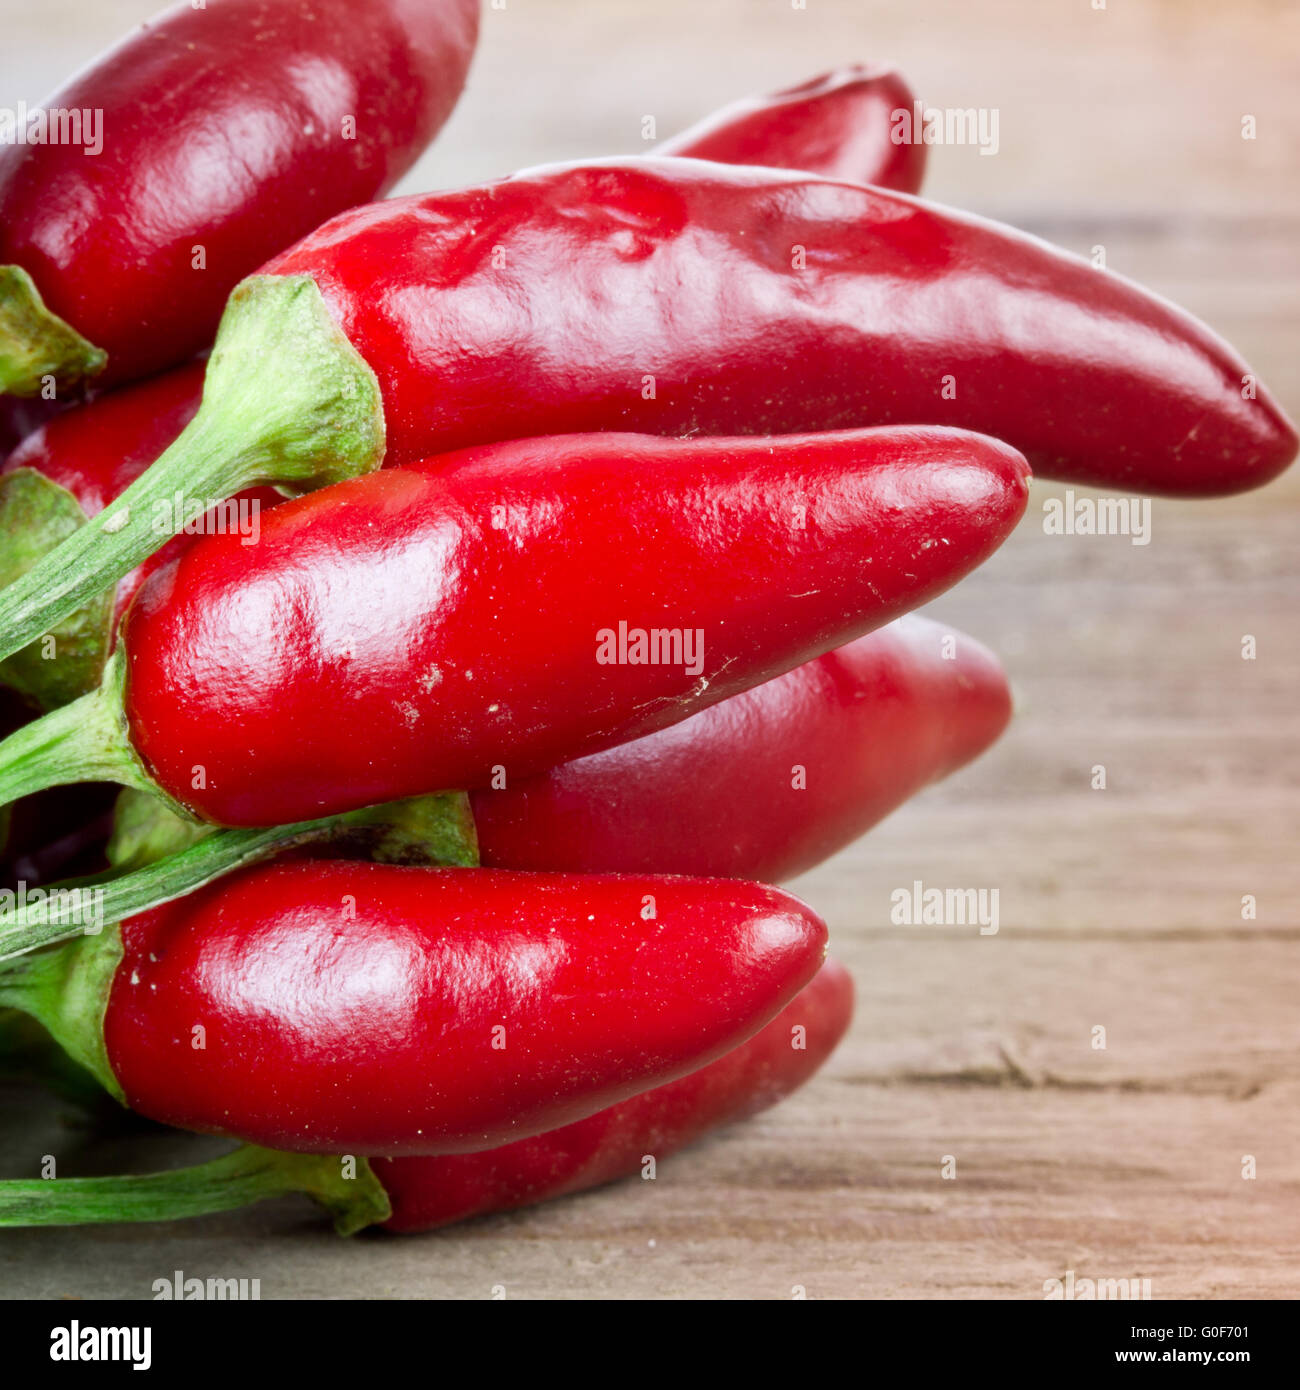 Pimientos chili rojo Foto de stock